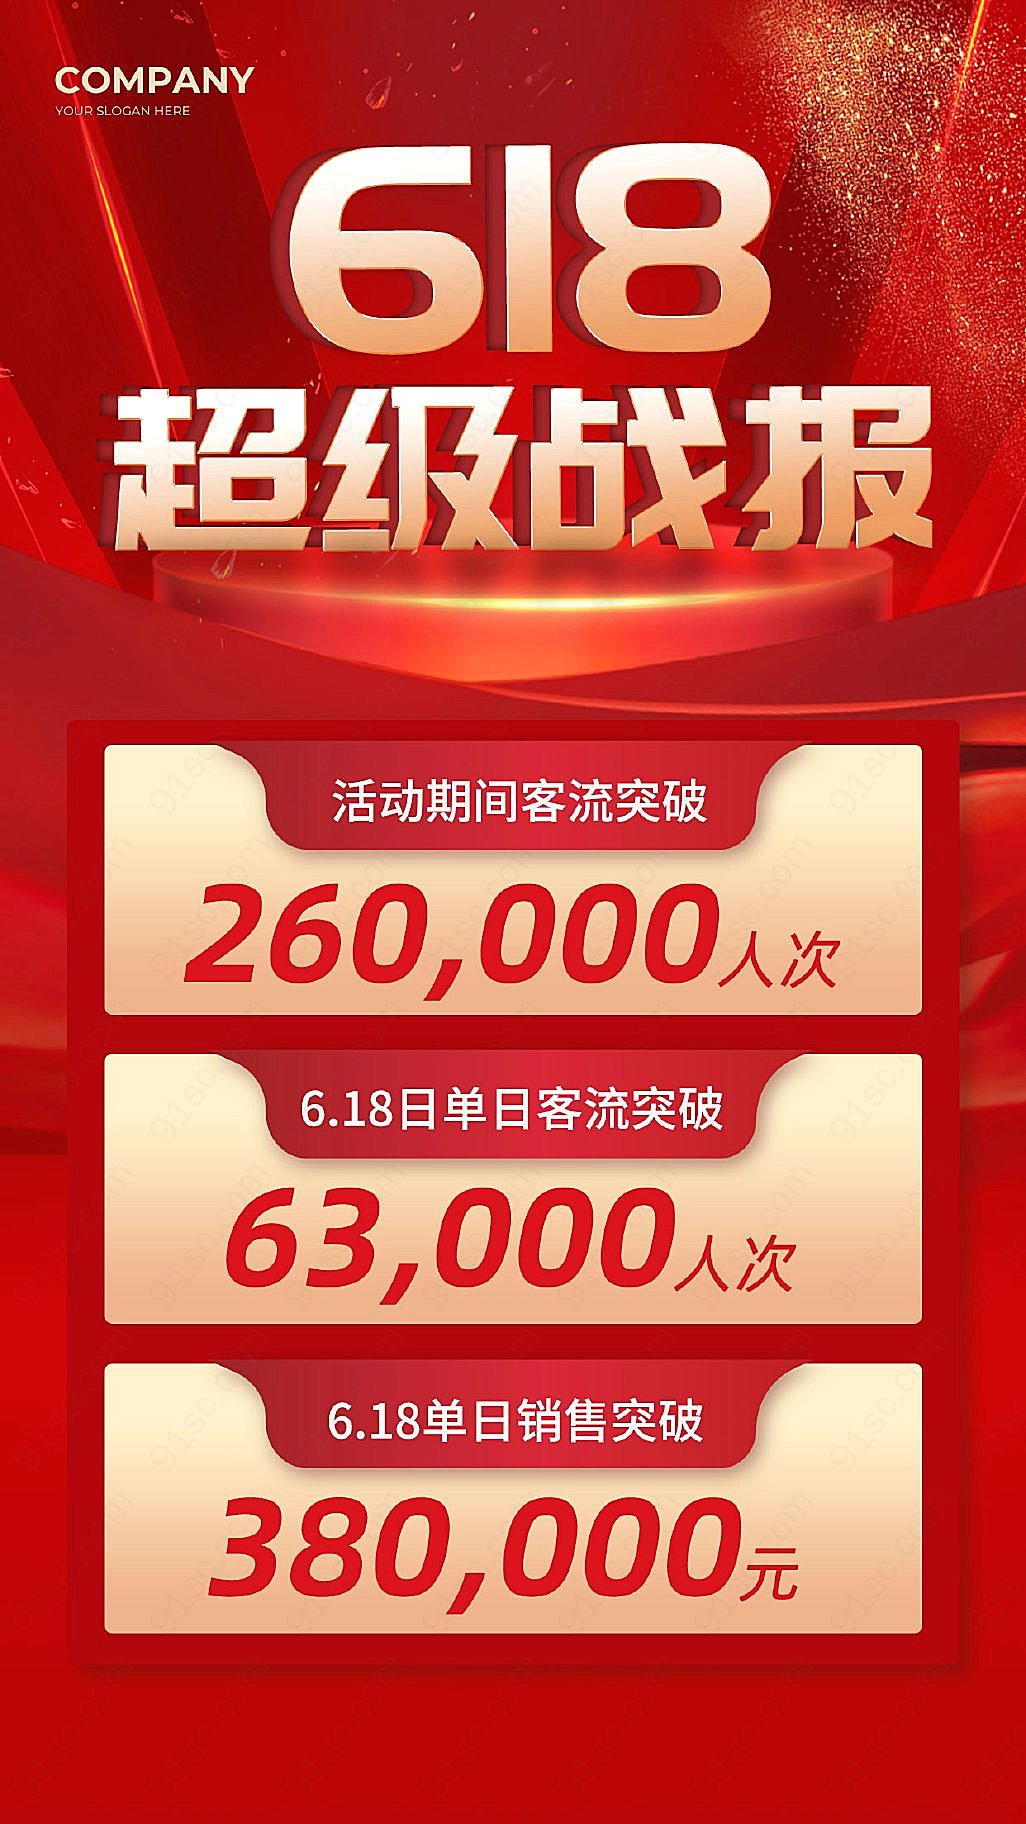 红色炫耀618超级疯狂促销618战斗口号手机广告海报新媒体用图下载